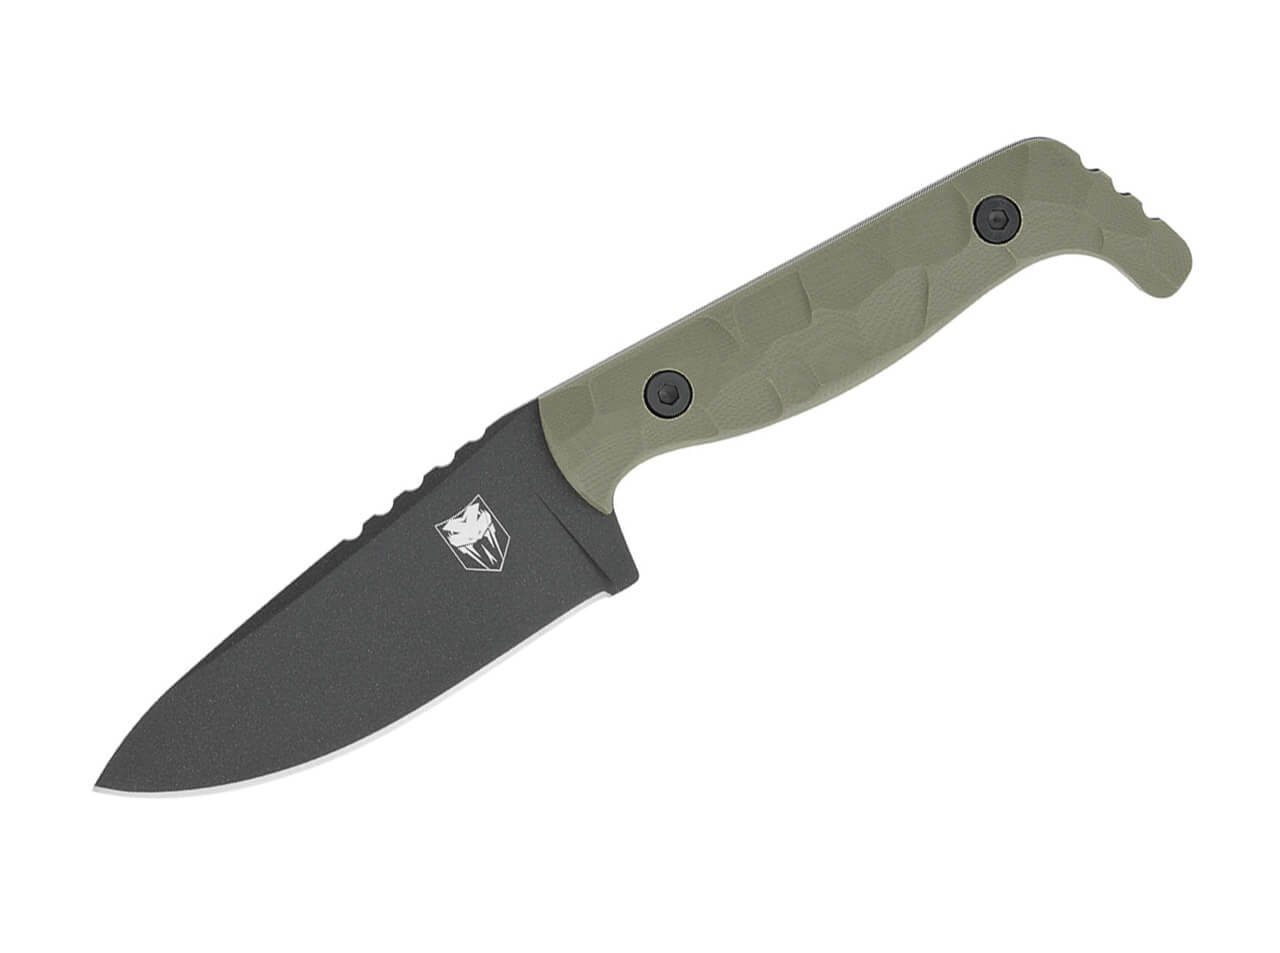 Böker Plus Universalmesser CobraTec Kingpin G10 OD Green feststehendes Messer mit Kydexscheide